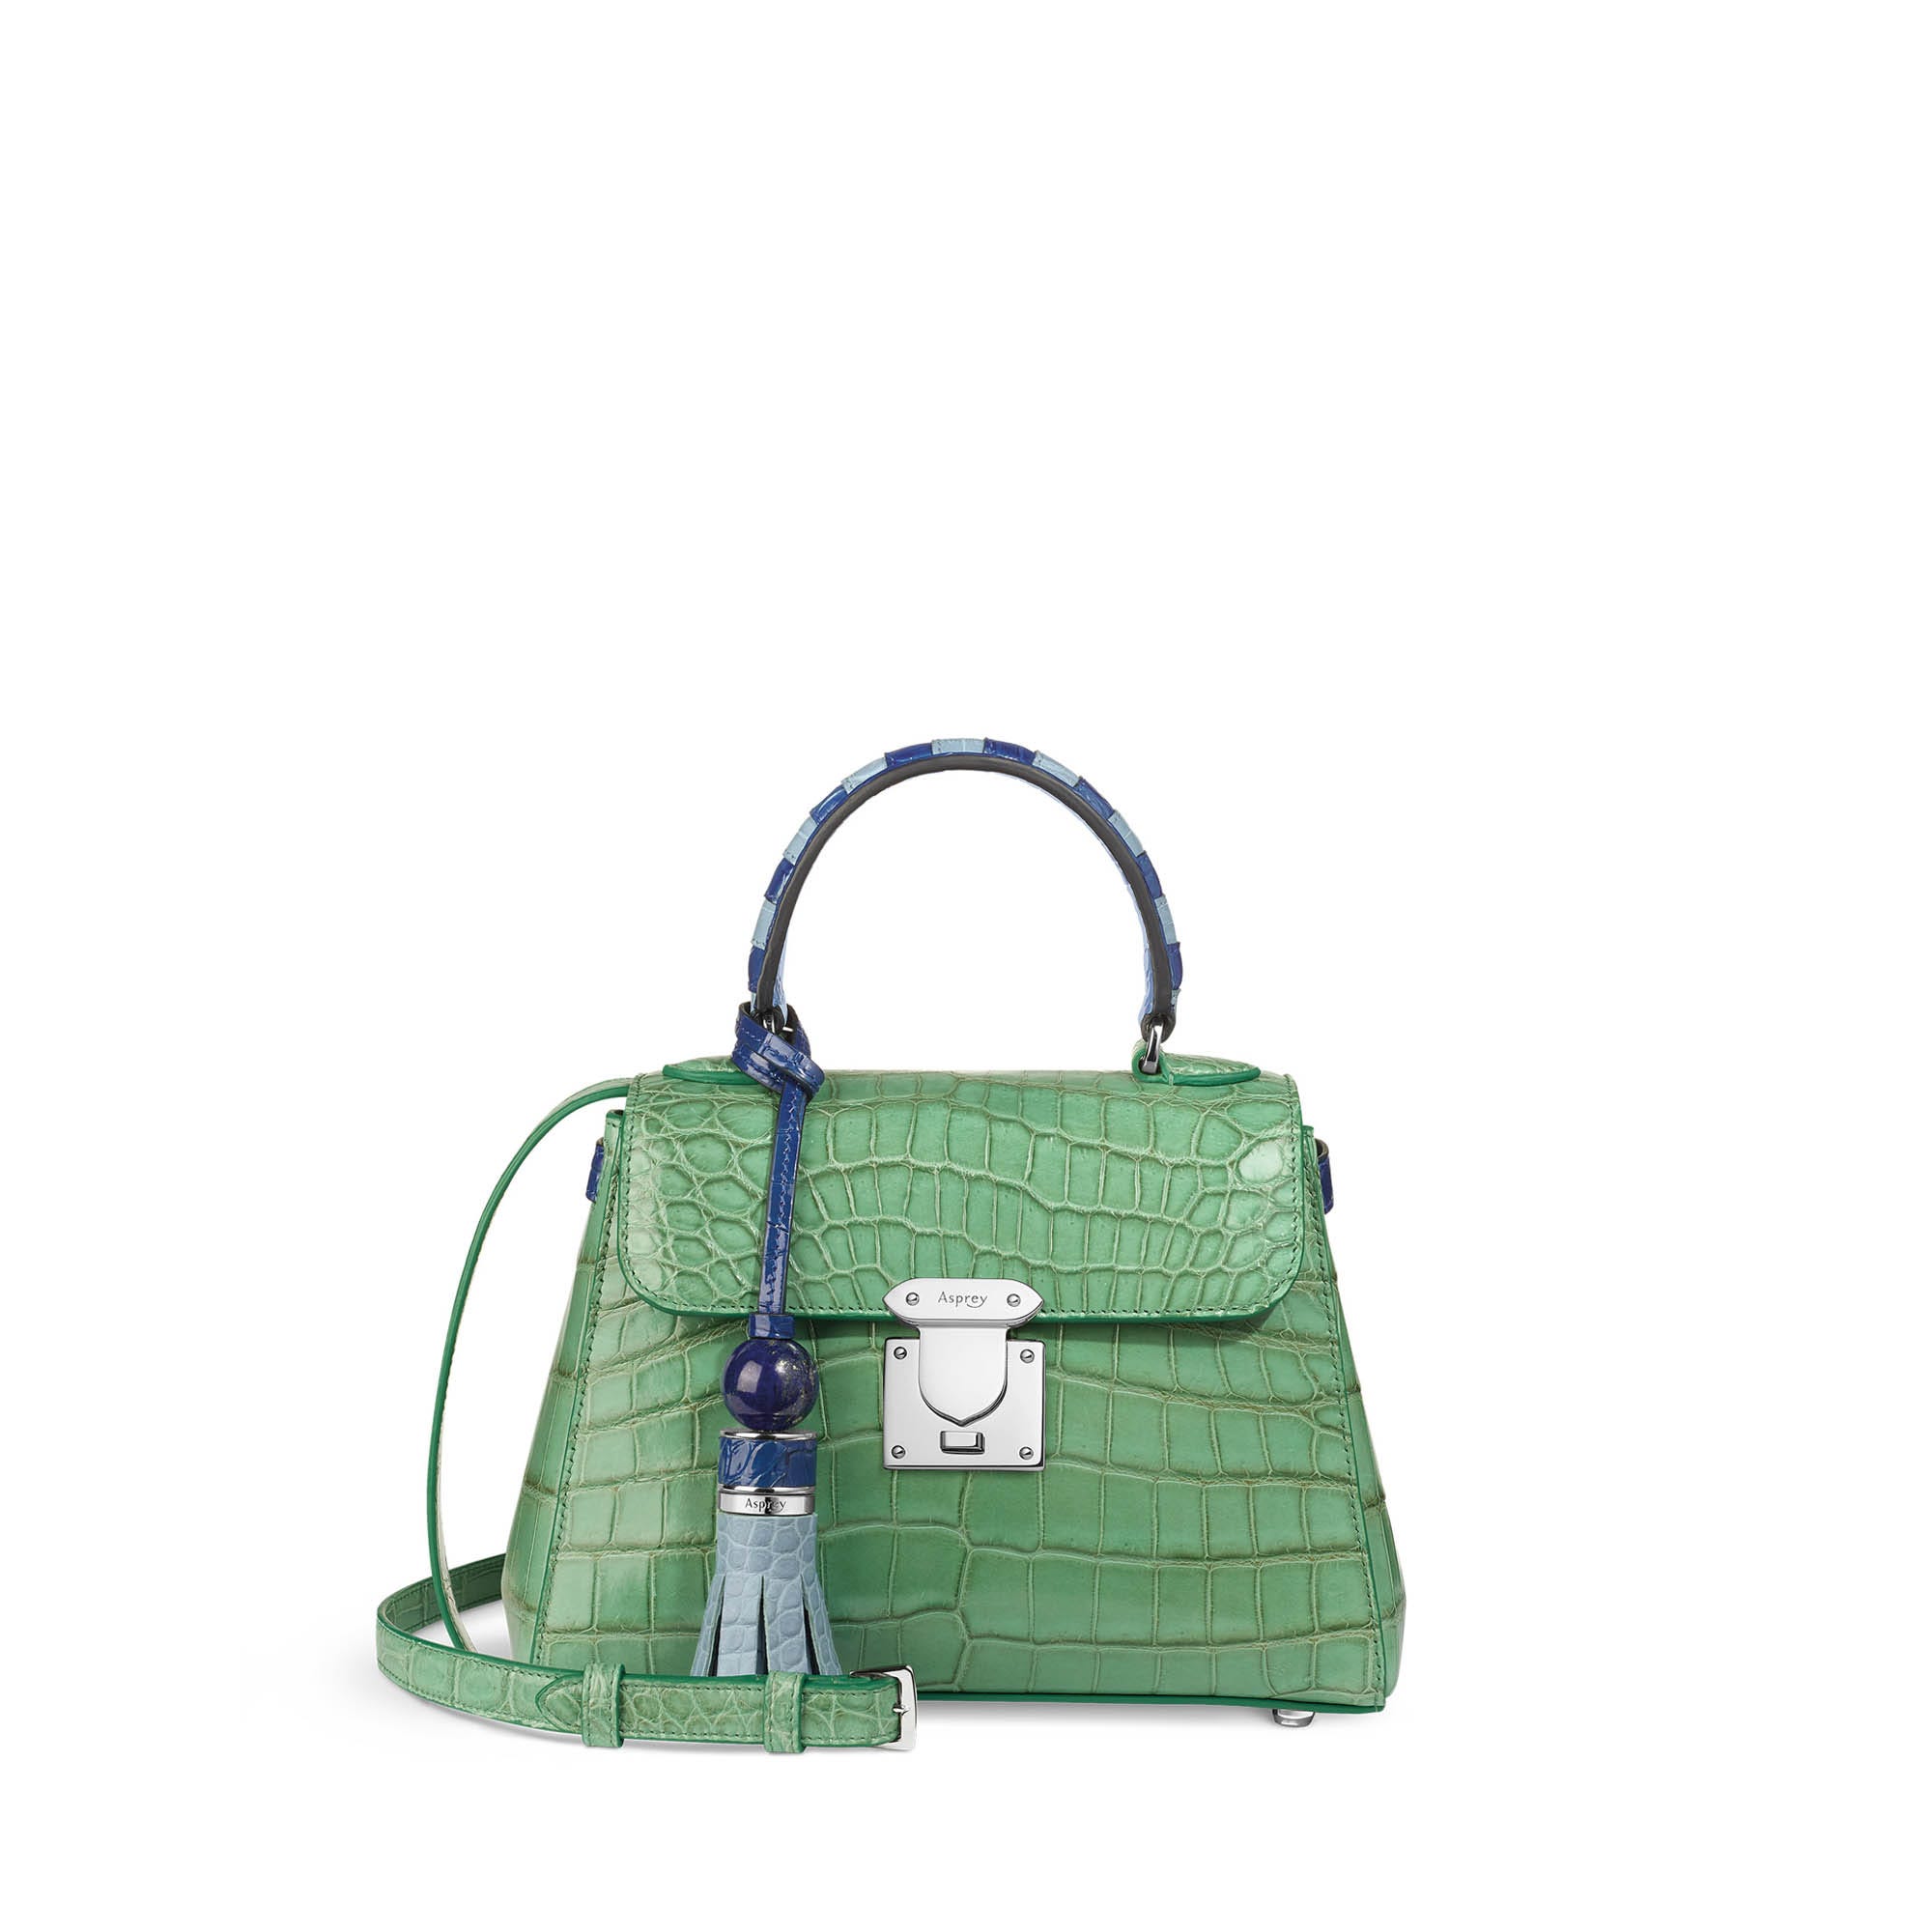 167 Mini Handbag in Jade Green Crocodile